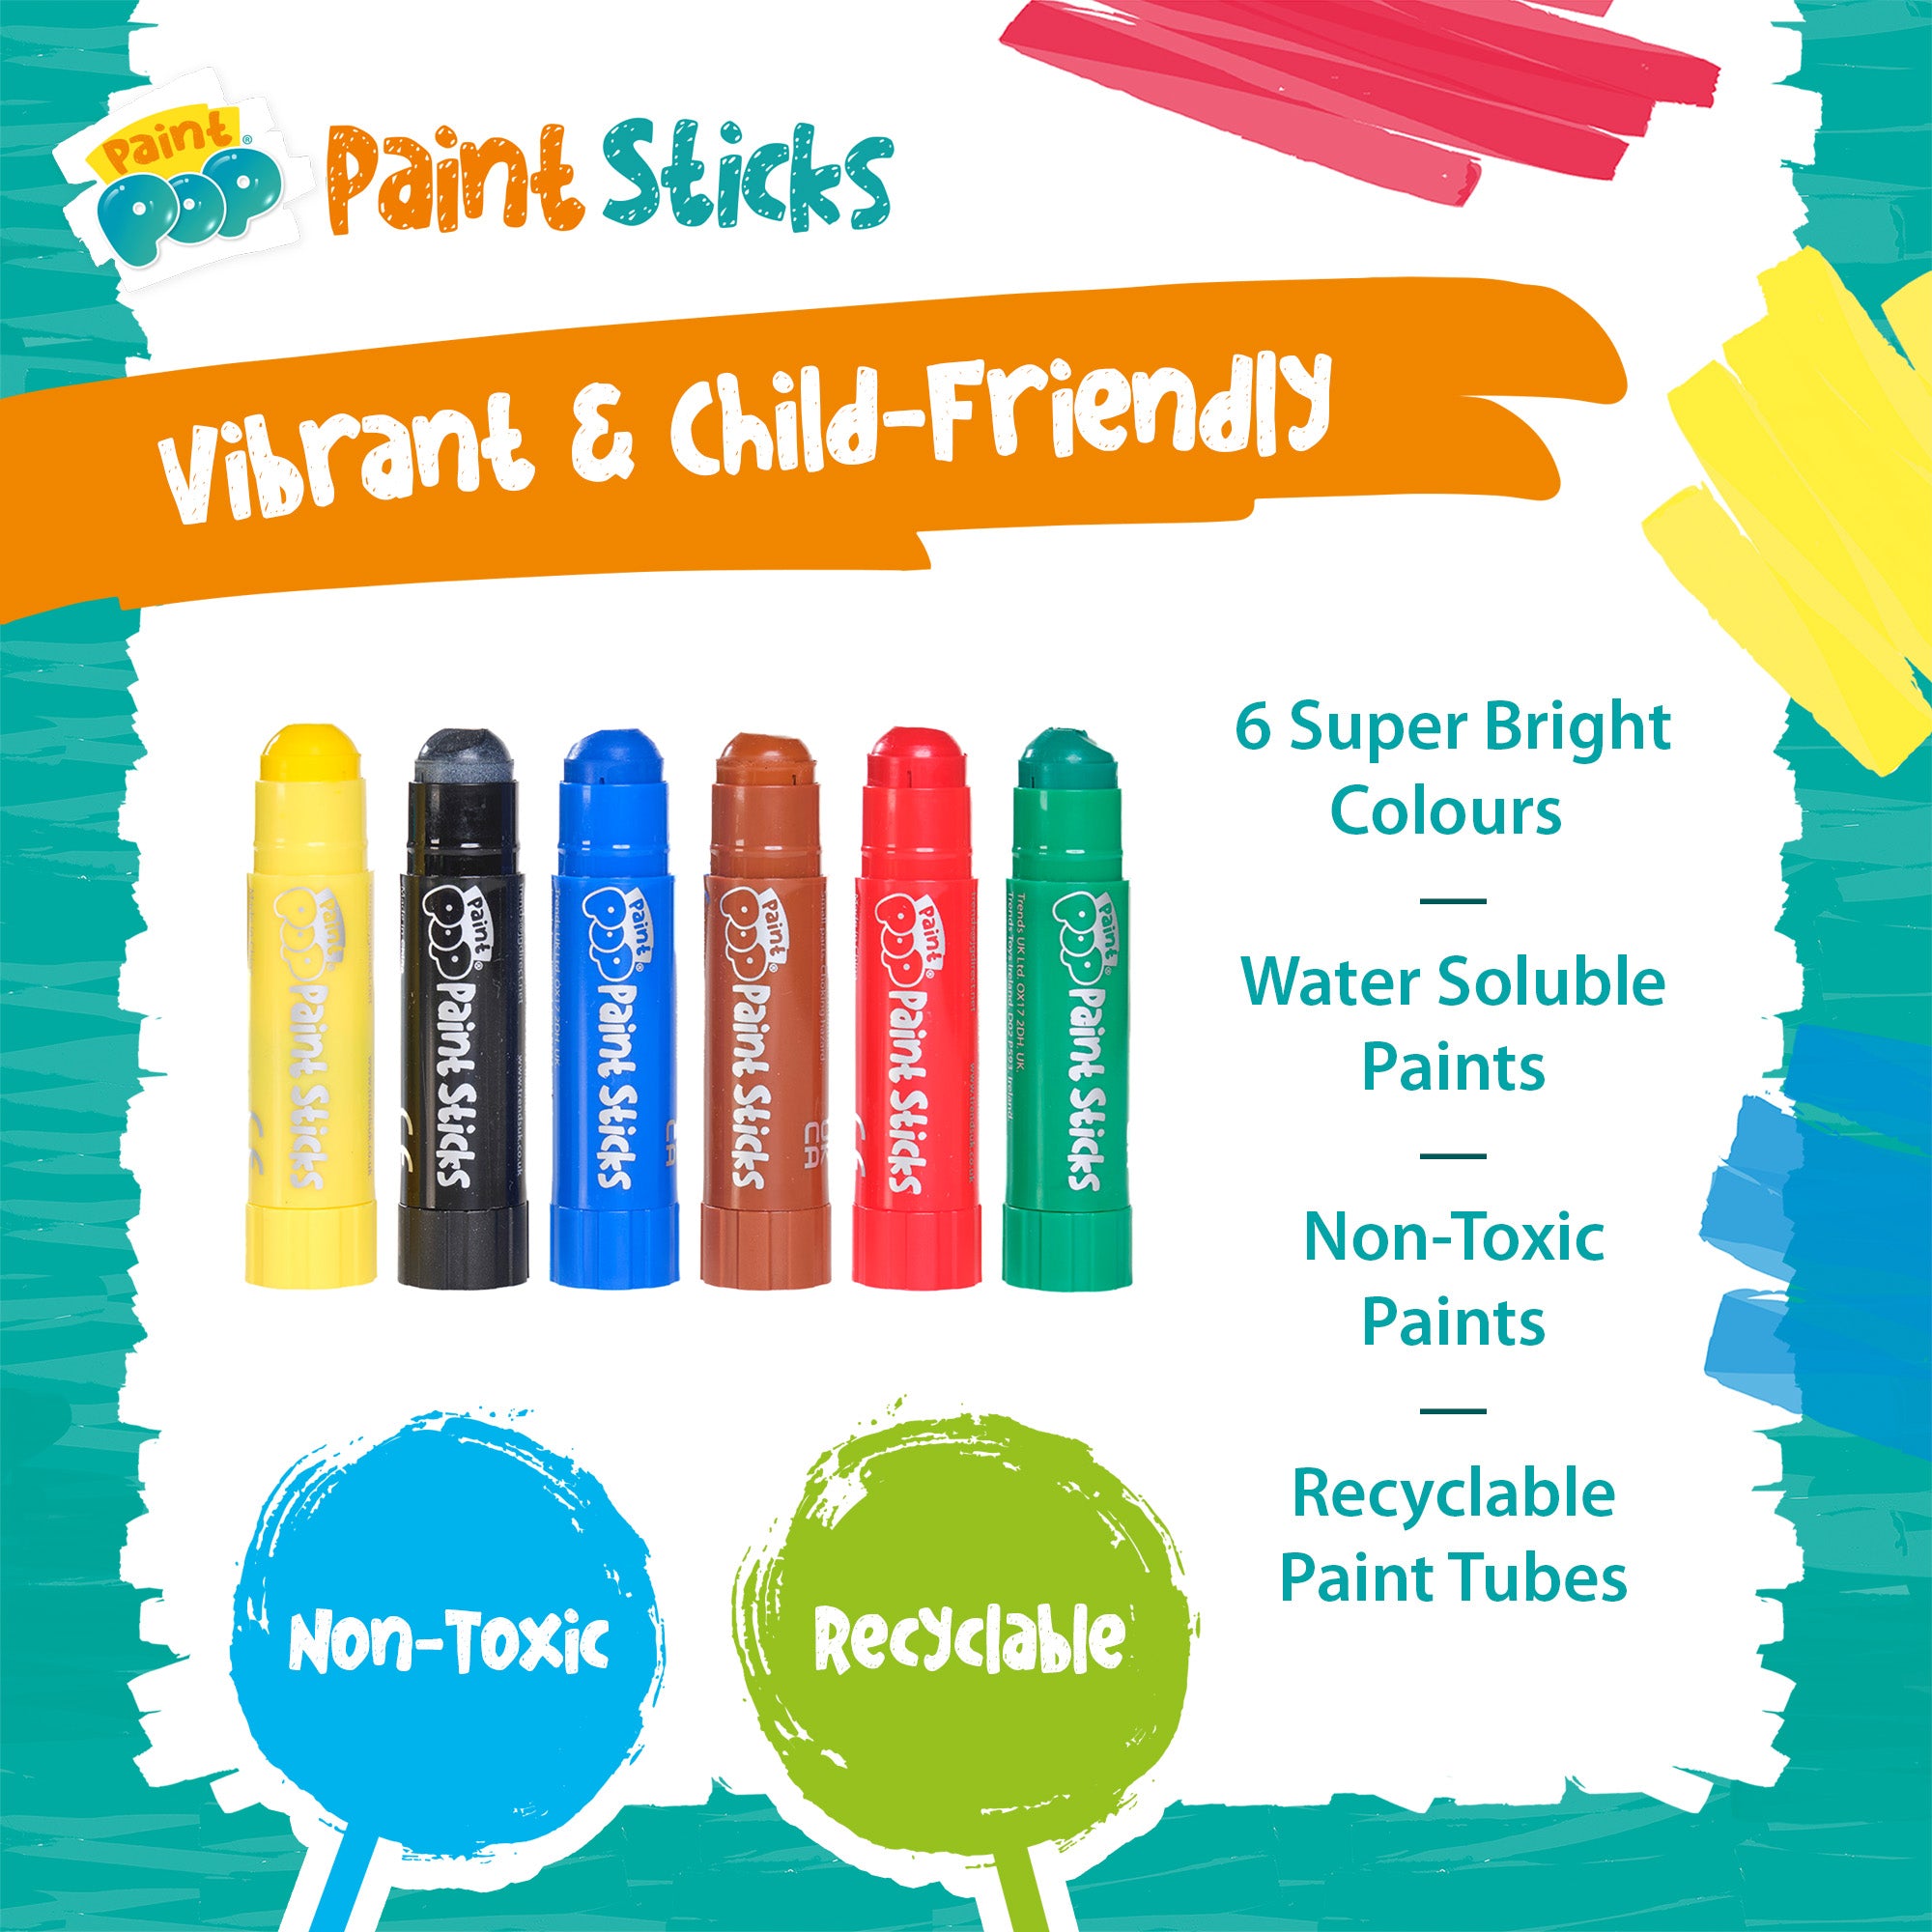 Paint Pop Classic 6 Pack Quick Dry Paint Sticks